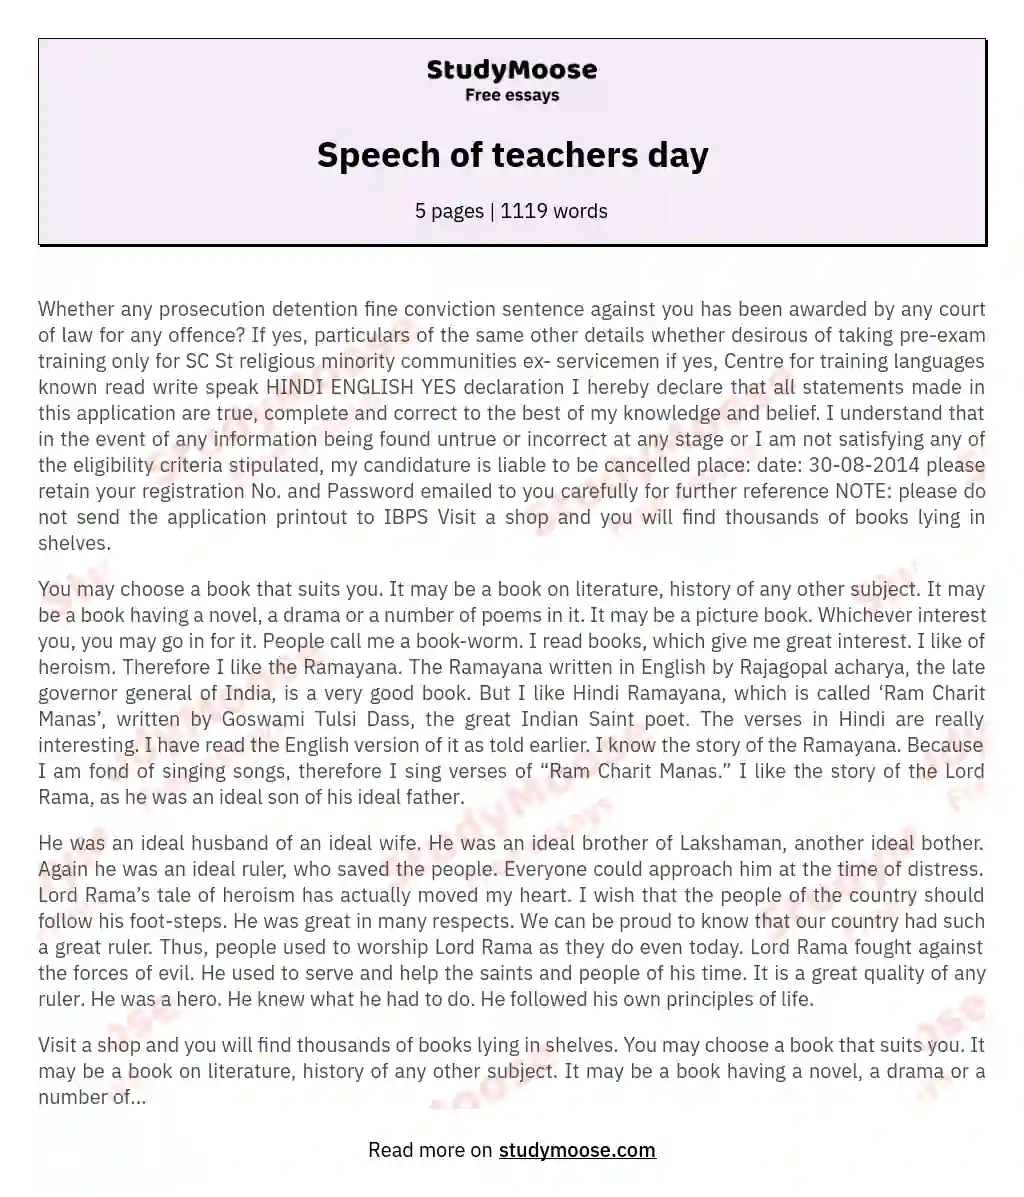 Speech of teachers day essay